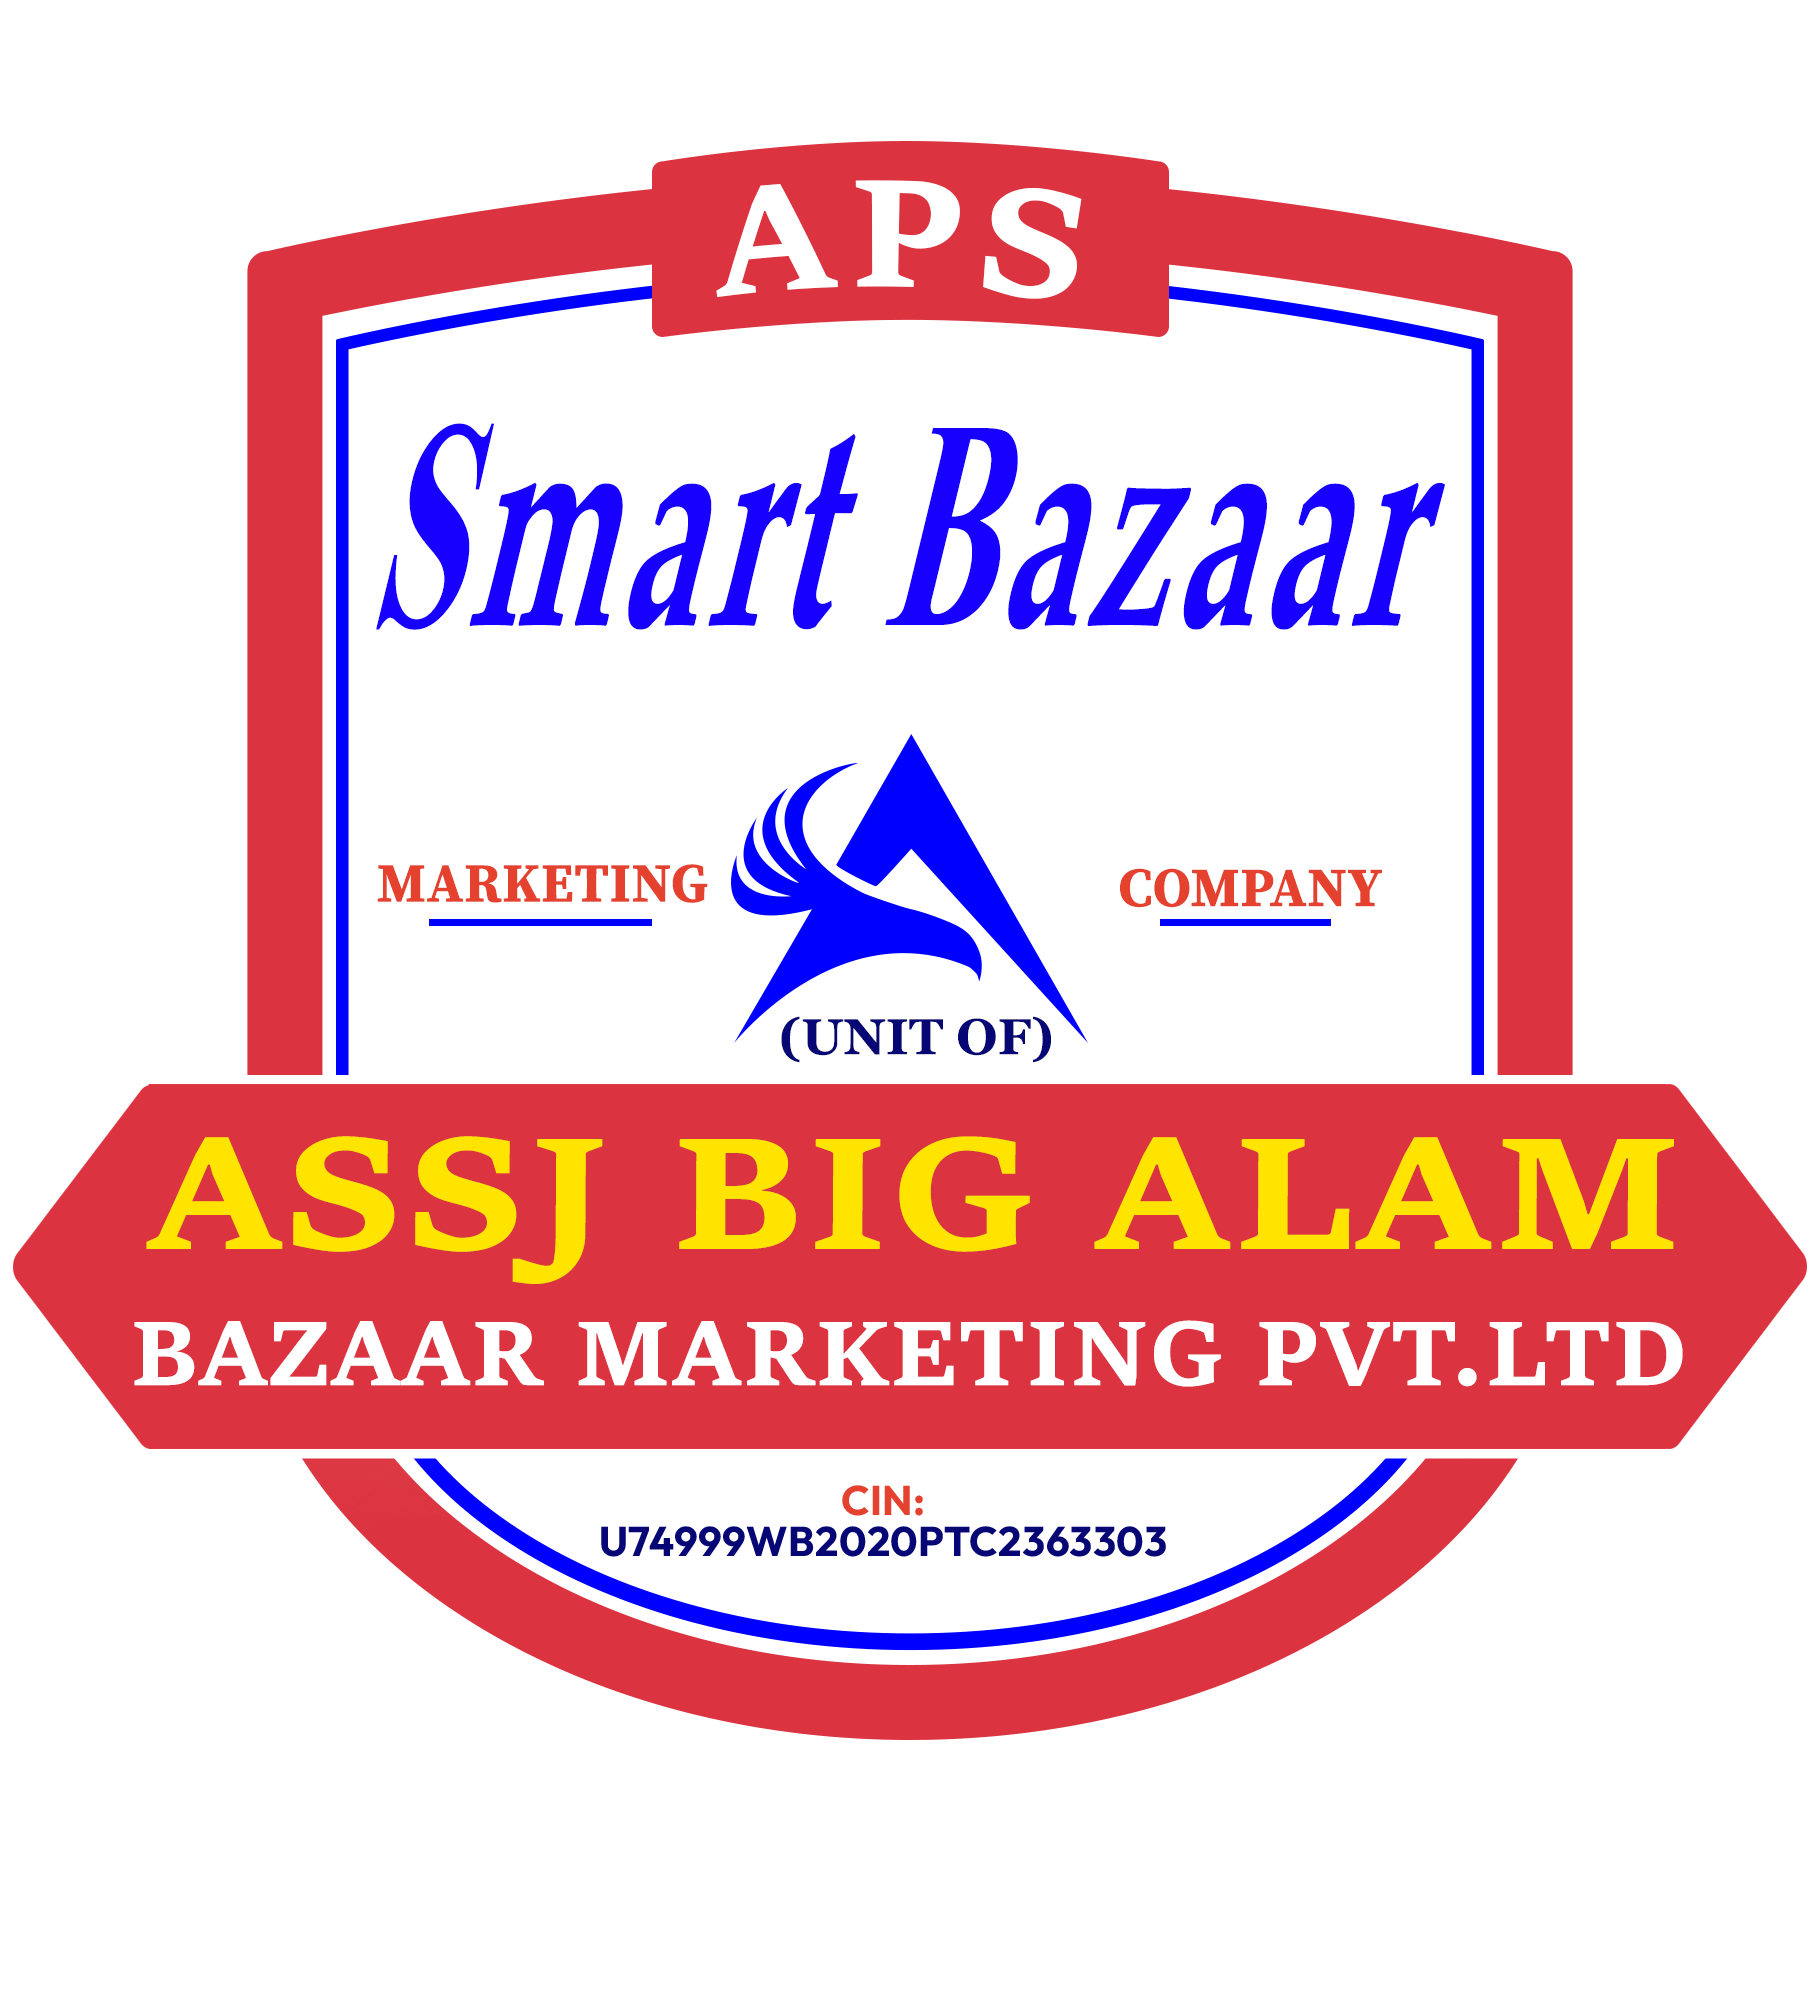 APS Smart Bazaar - Unit of ASSJ Big Alam Bazaar Marketing Pvt Ltd